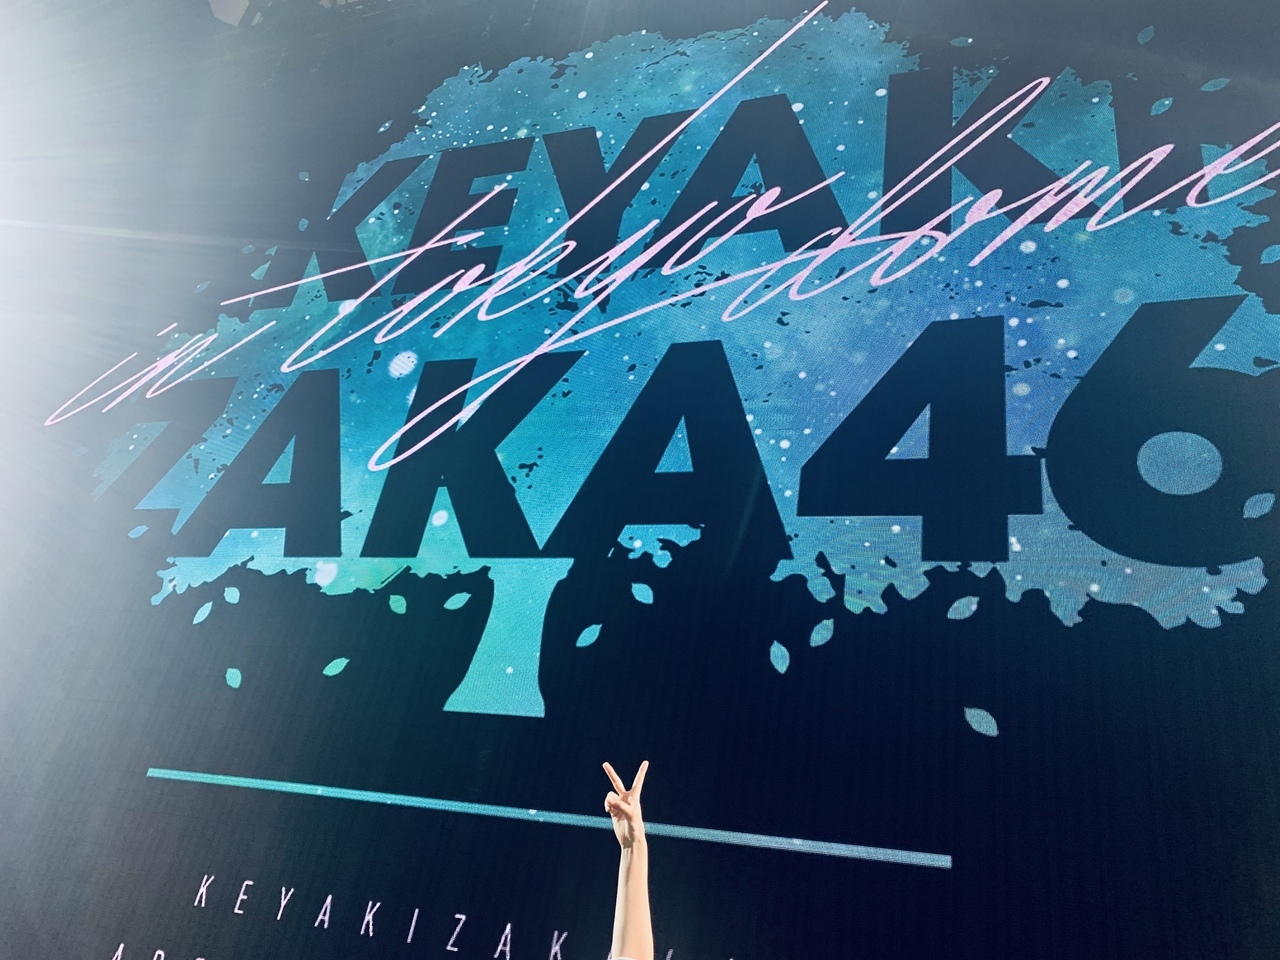 欅坂46 公式ブログ 欅坂46公式サイト